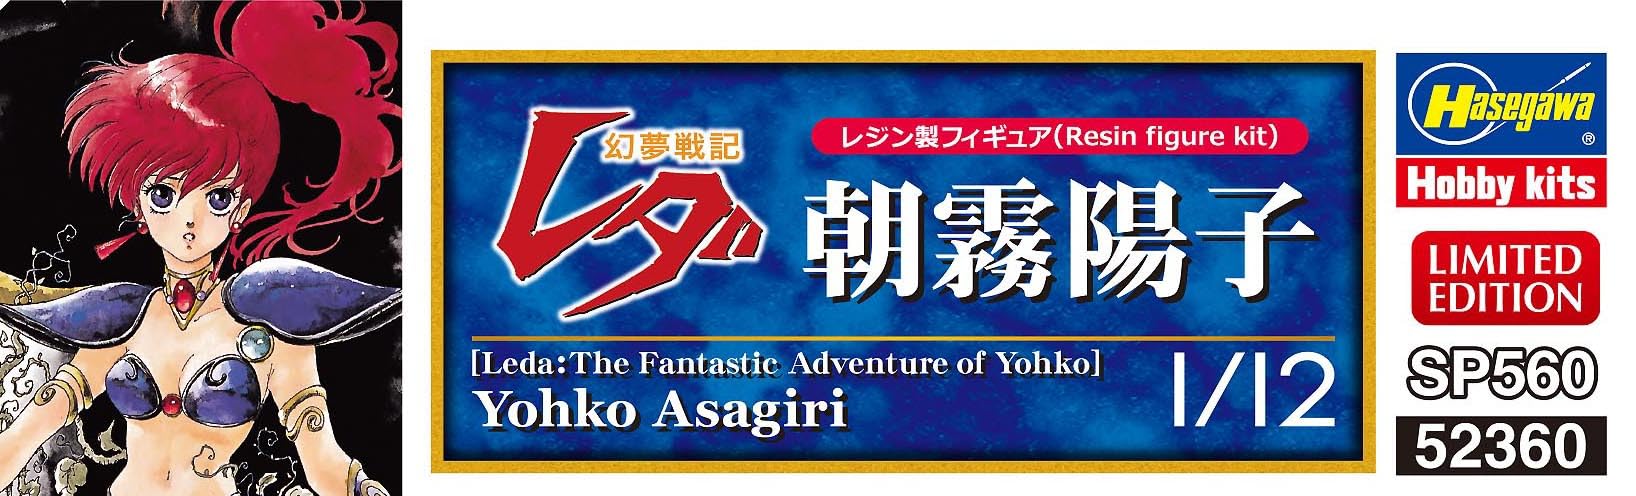 Hasegawa Leda The Fantastic Adventure of Yohko Asagiri Yoko 1/12 Resin Kit SP560_5